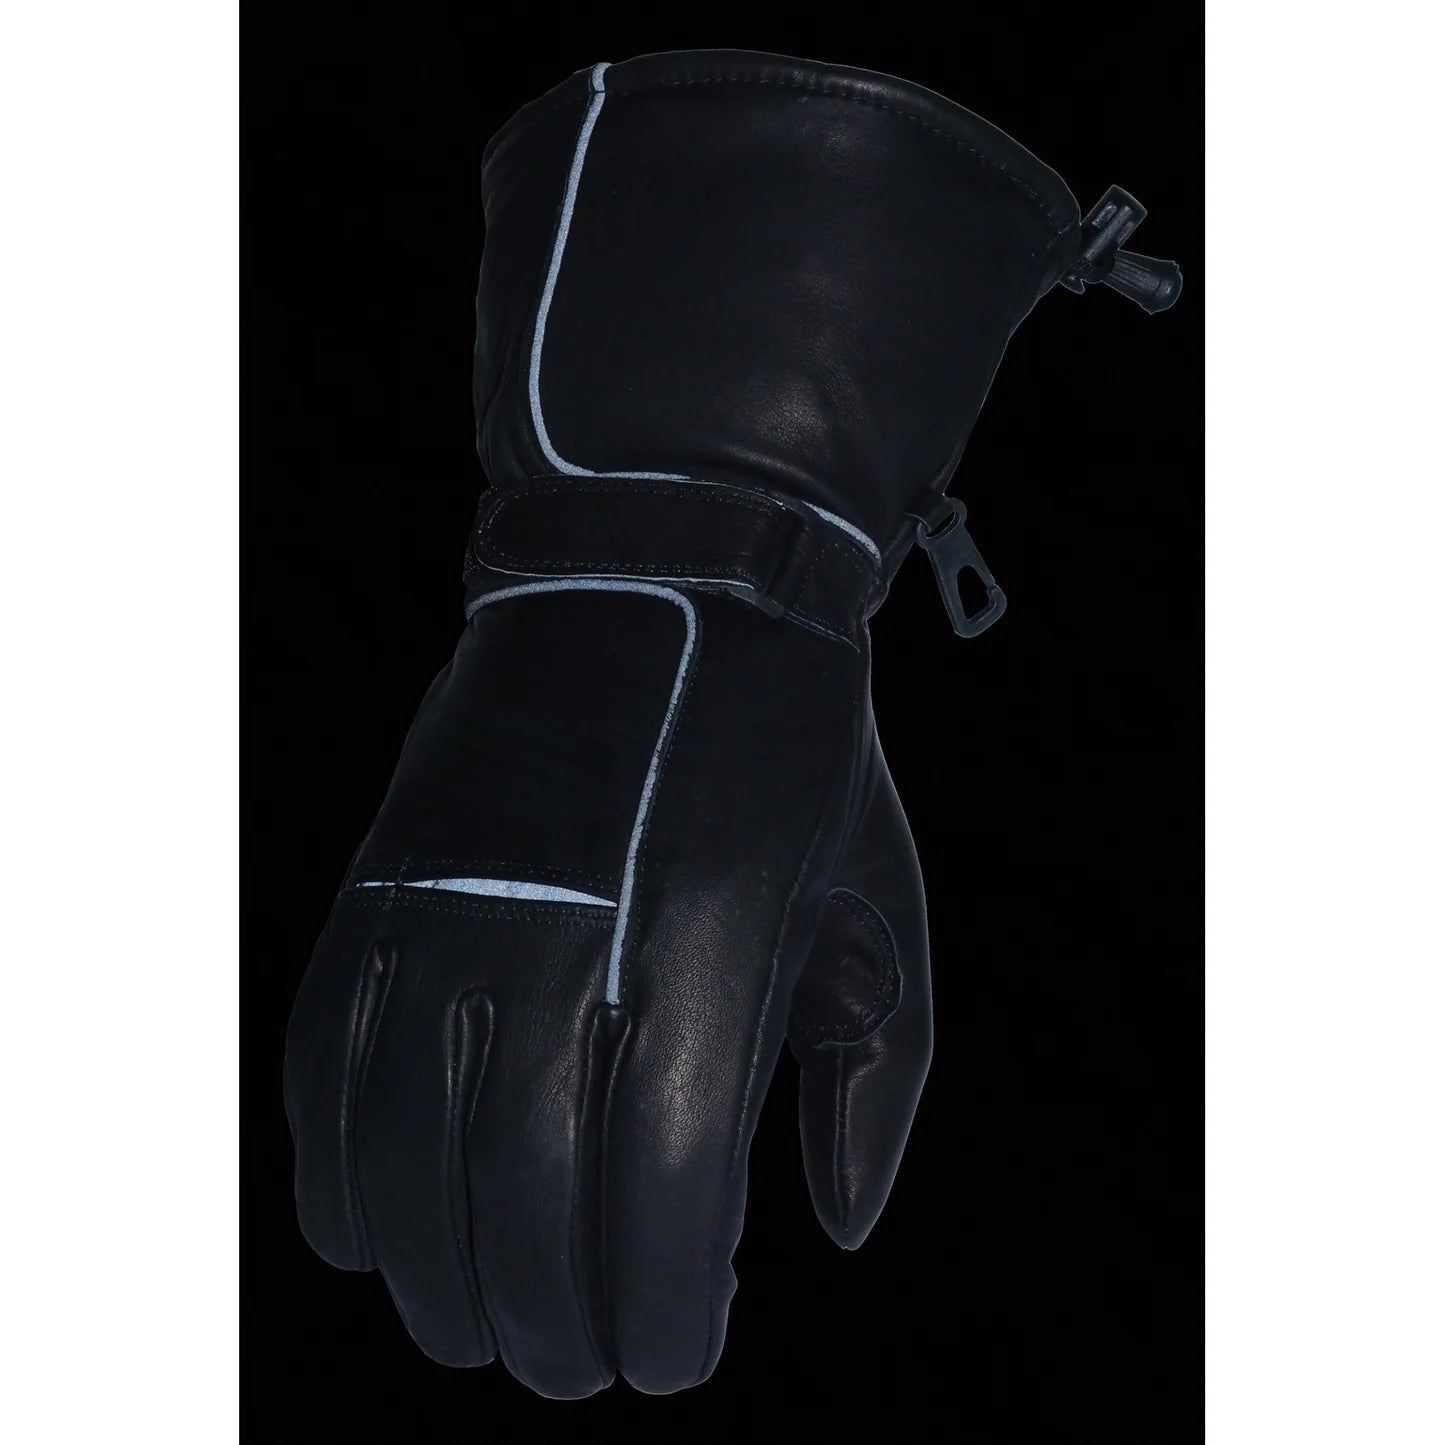 Men's Black Leather Waterproof Gel Palm Gauntlet Gloves